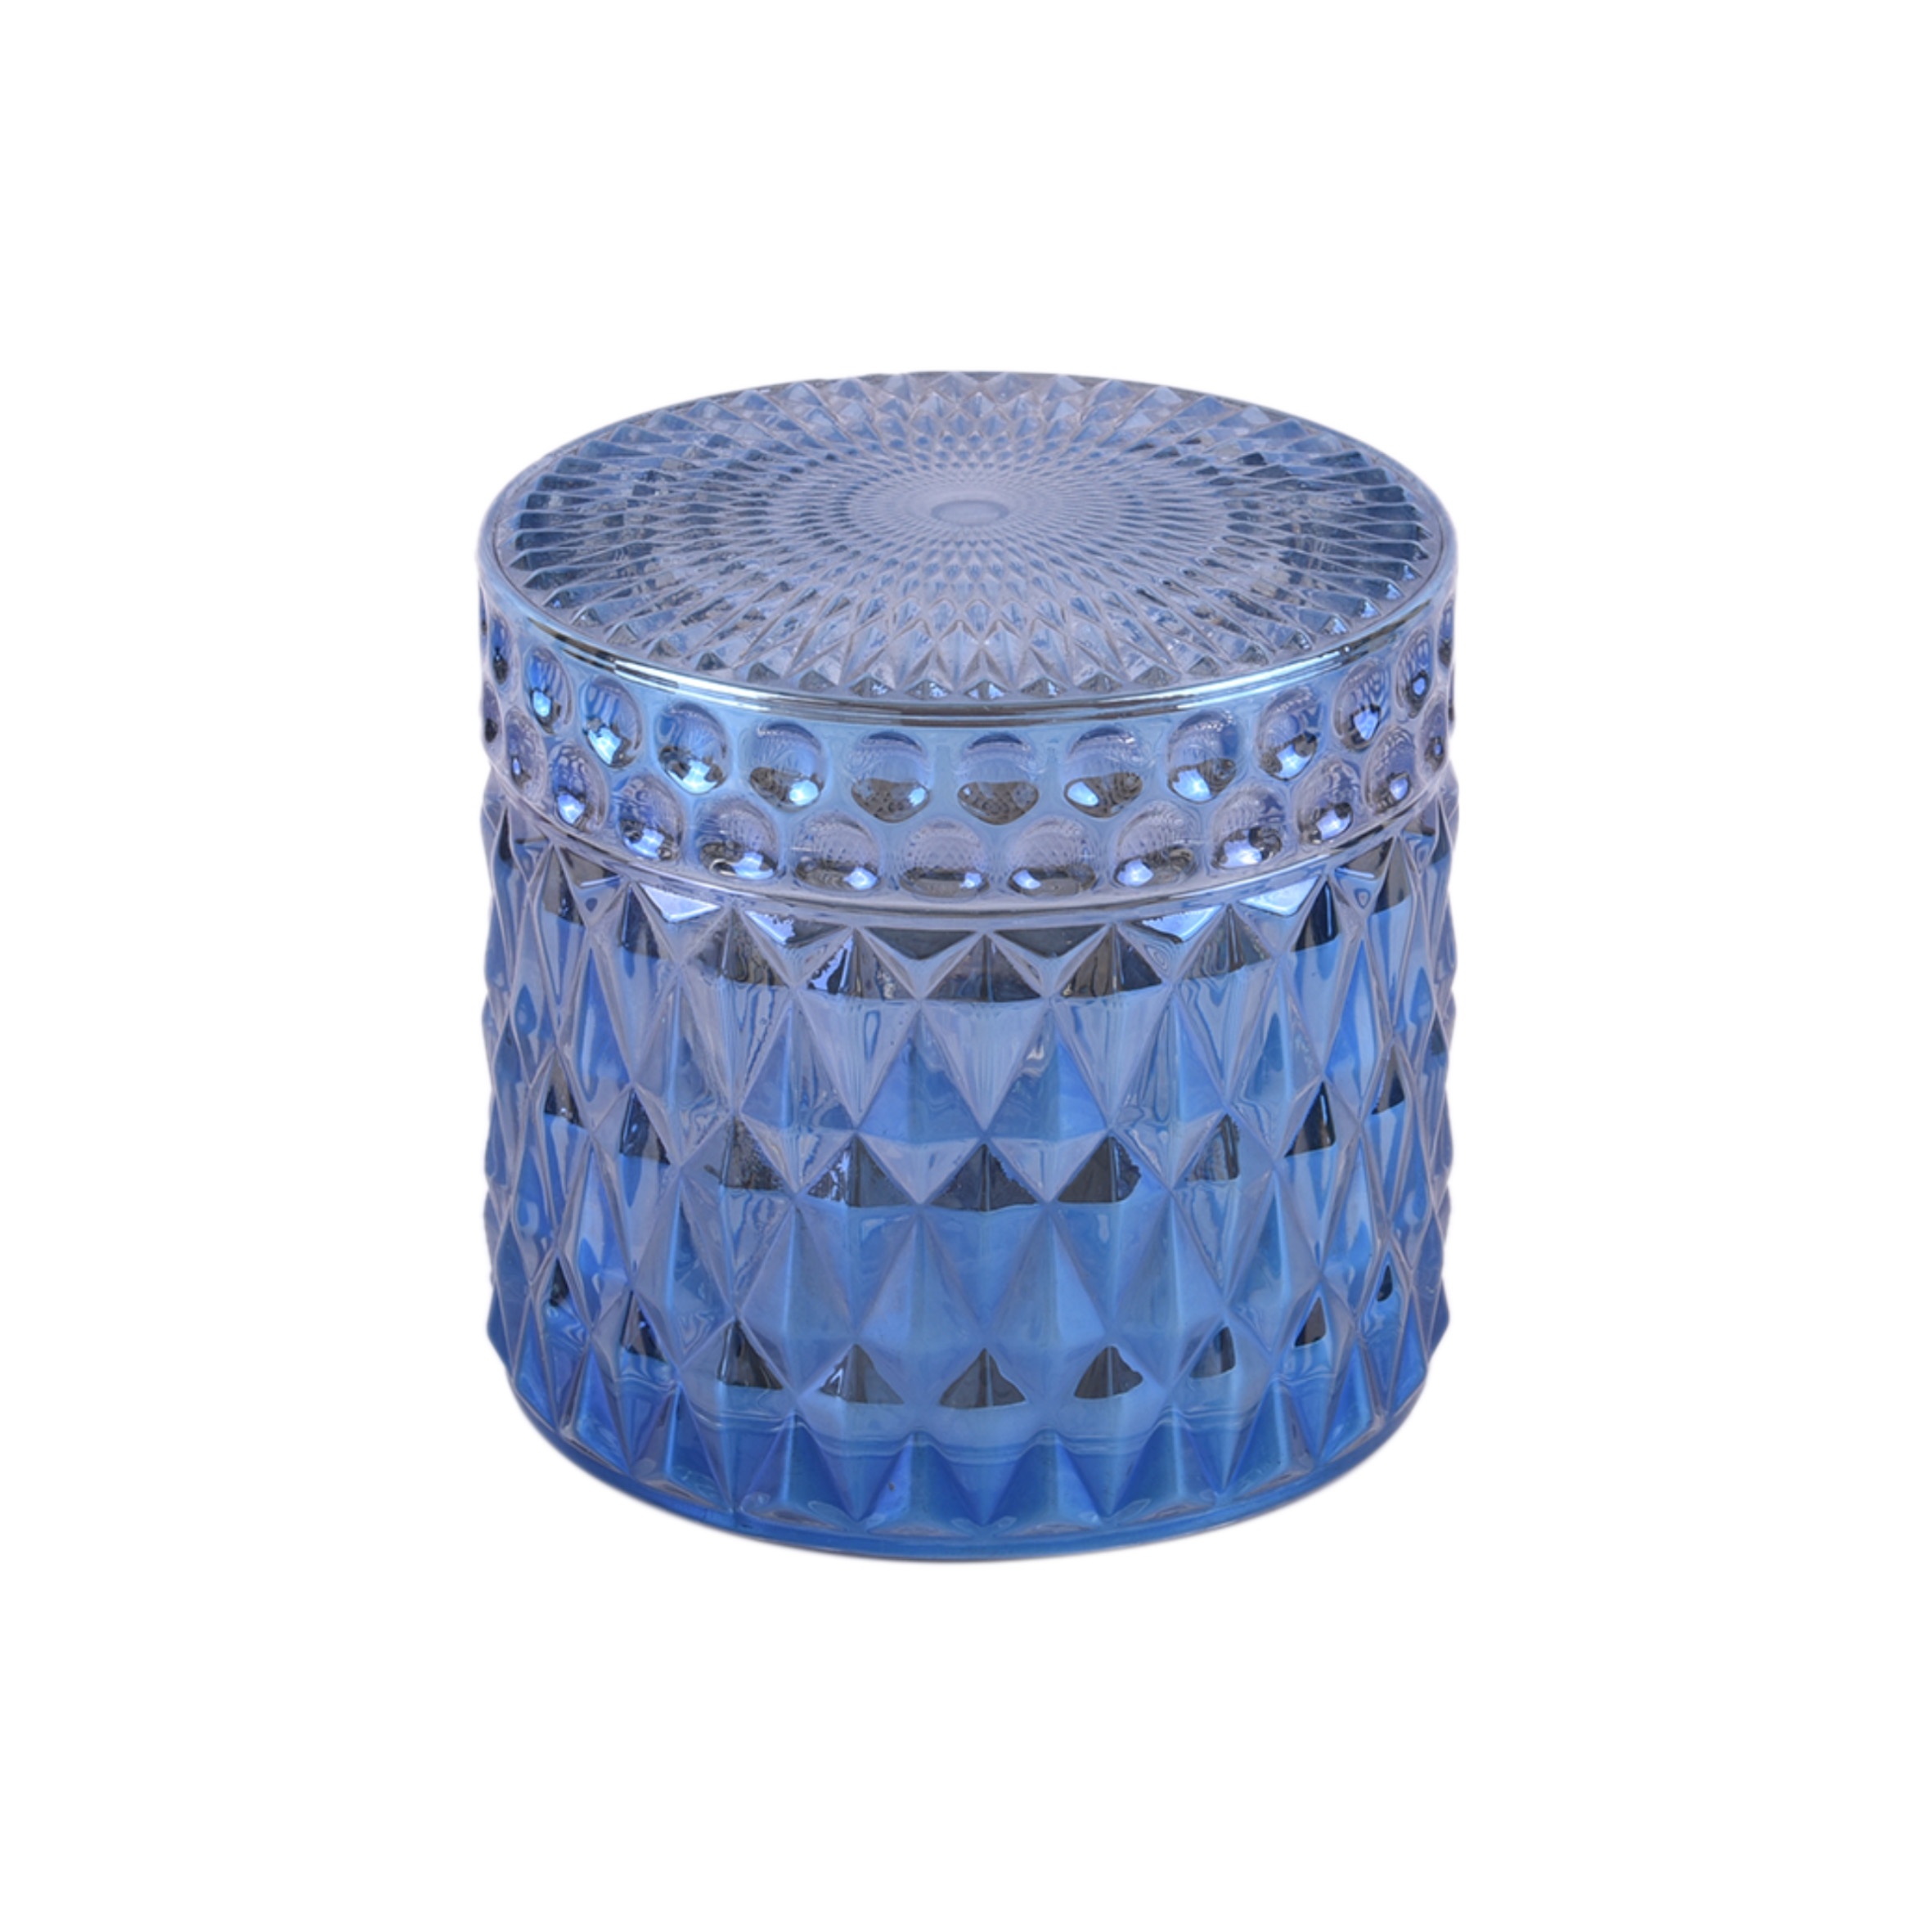 glass storage jar blue storage container home decor bottles